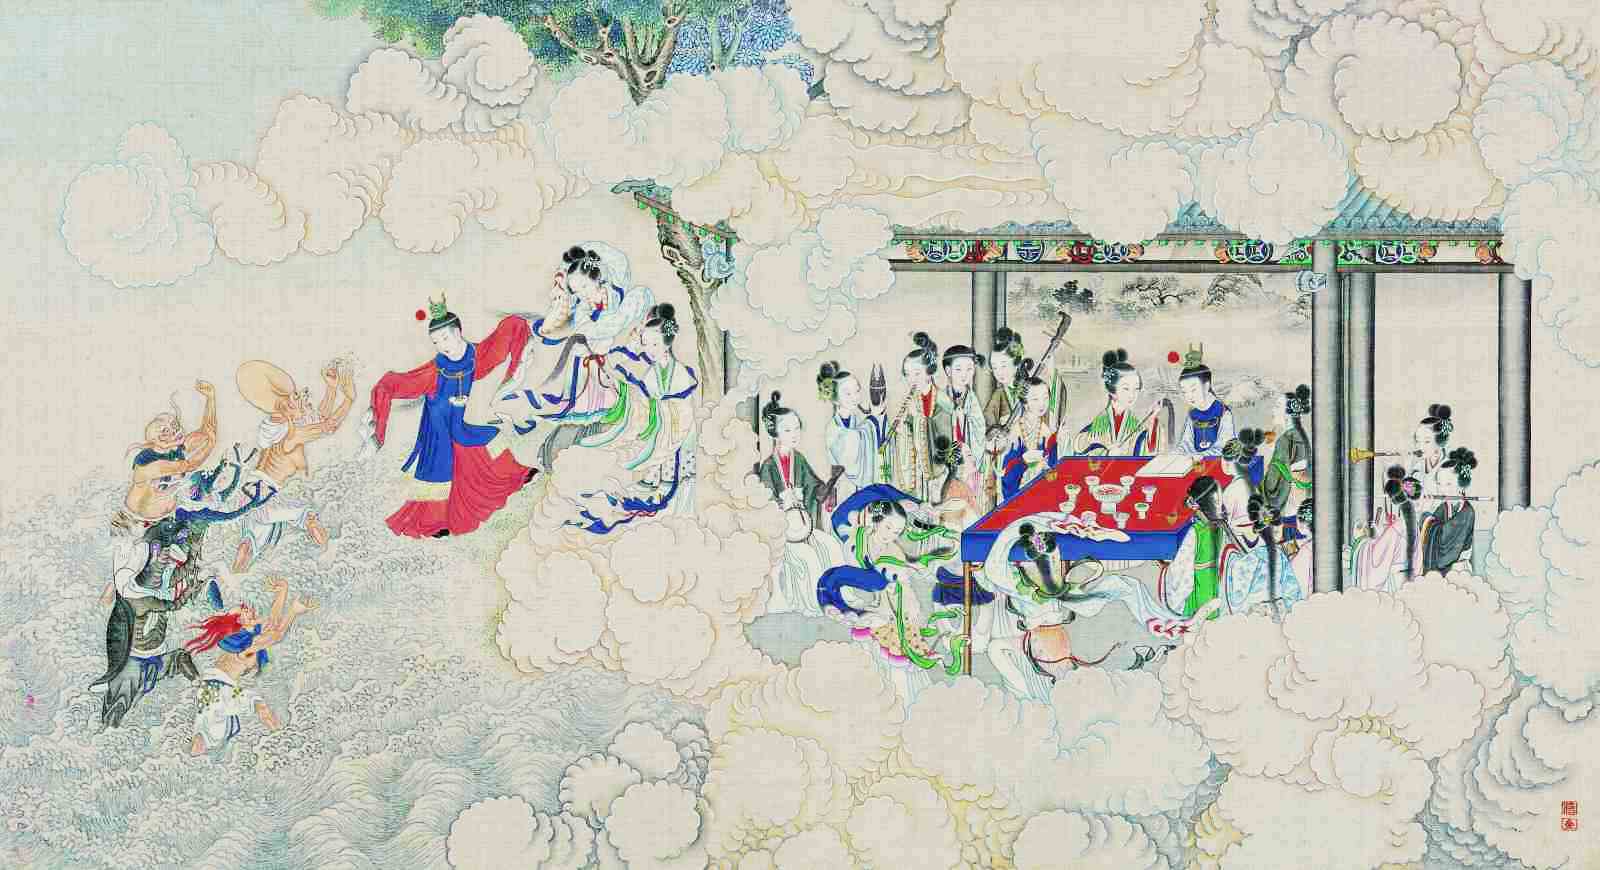 Tào Tuyết Cần miêu tả Thiên giới triển hiện tại thế gian con người được phân thành nhiều tầng, qua đó có thể thấy sự lĩnh ngộ của tác giả với Thiên ý là vô cùng thâm hậu. (Hình minh họa "Hồng lâu mộng" do Qing Sun Wen vẽ/ Wikipedia/ Phạm vi công cộng)